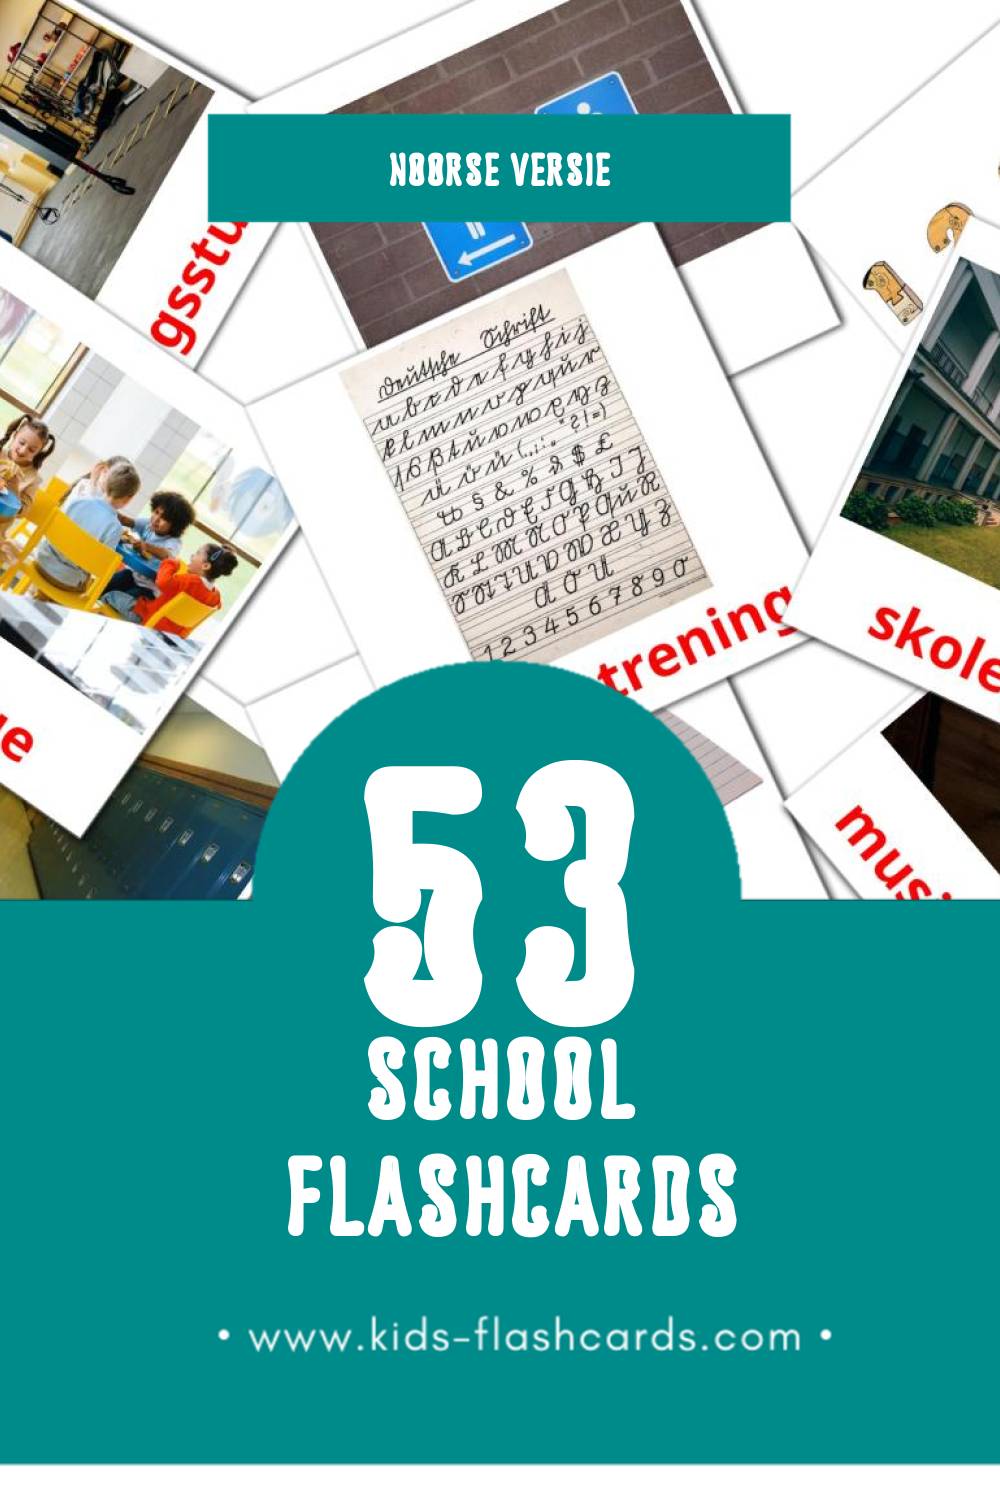 Visuele Skole Flashcards voor Kleuters (53 kaarten in het Noors)